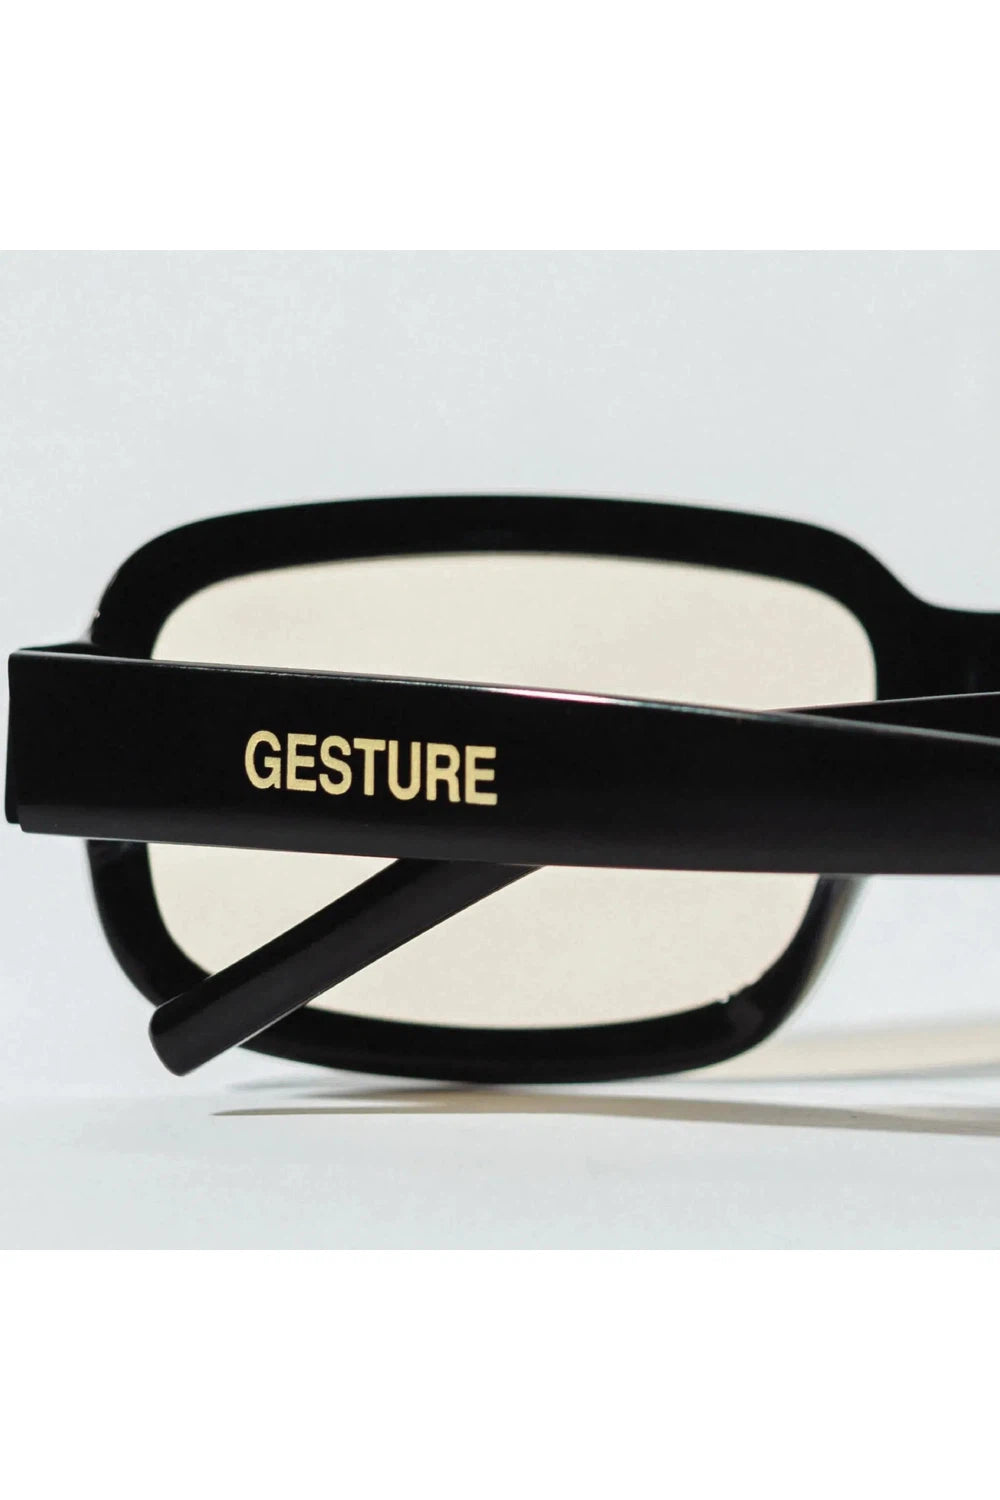 Gesture Eyewear 005 - Black / Sunset | GESTURE EYEWEAR | Mad About The Boy